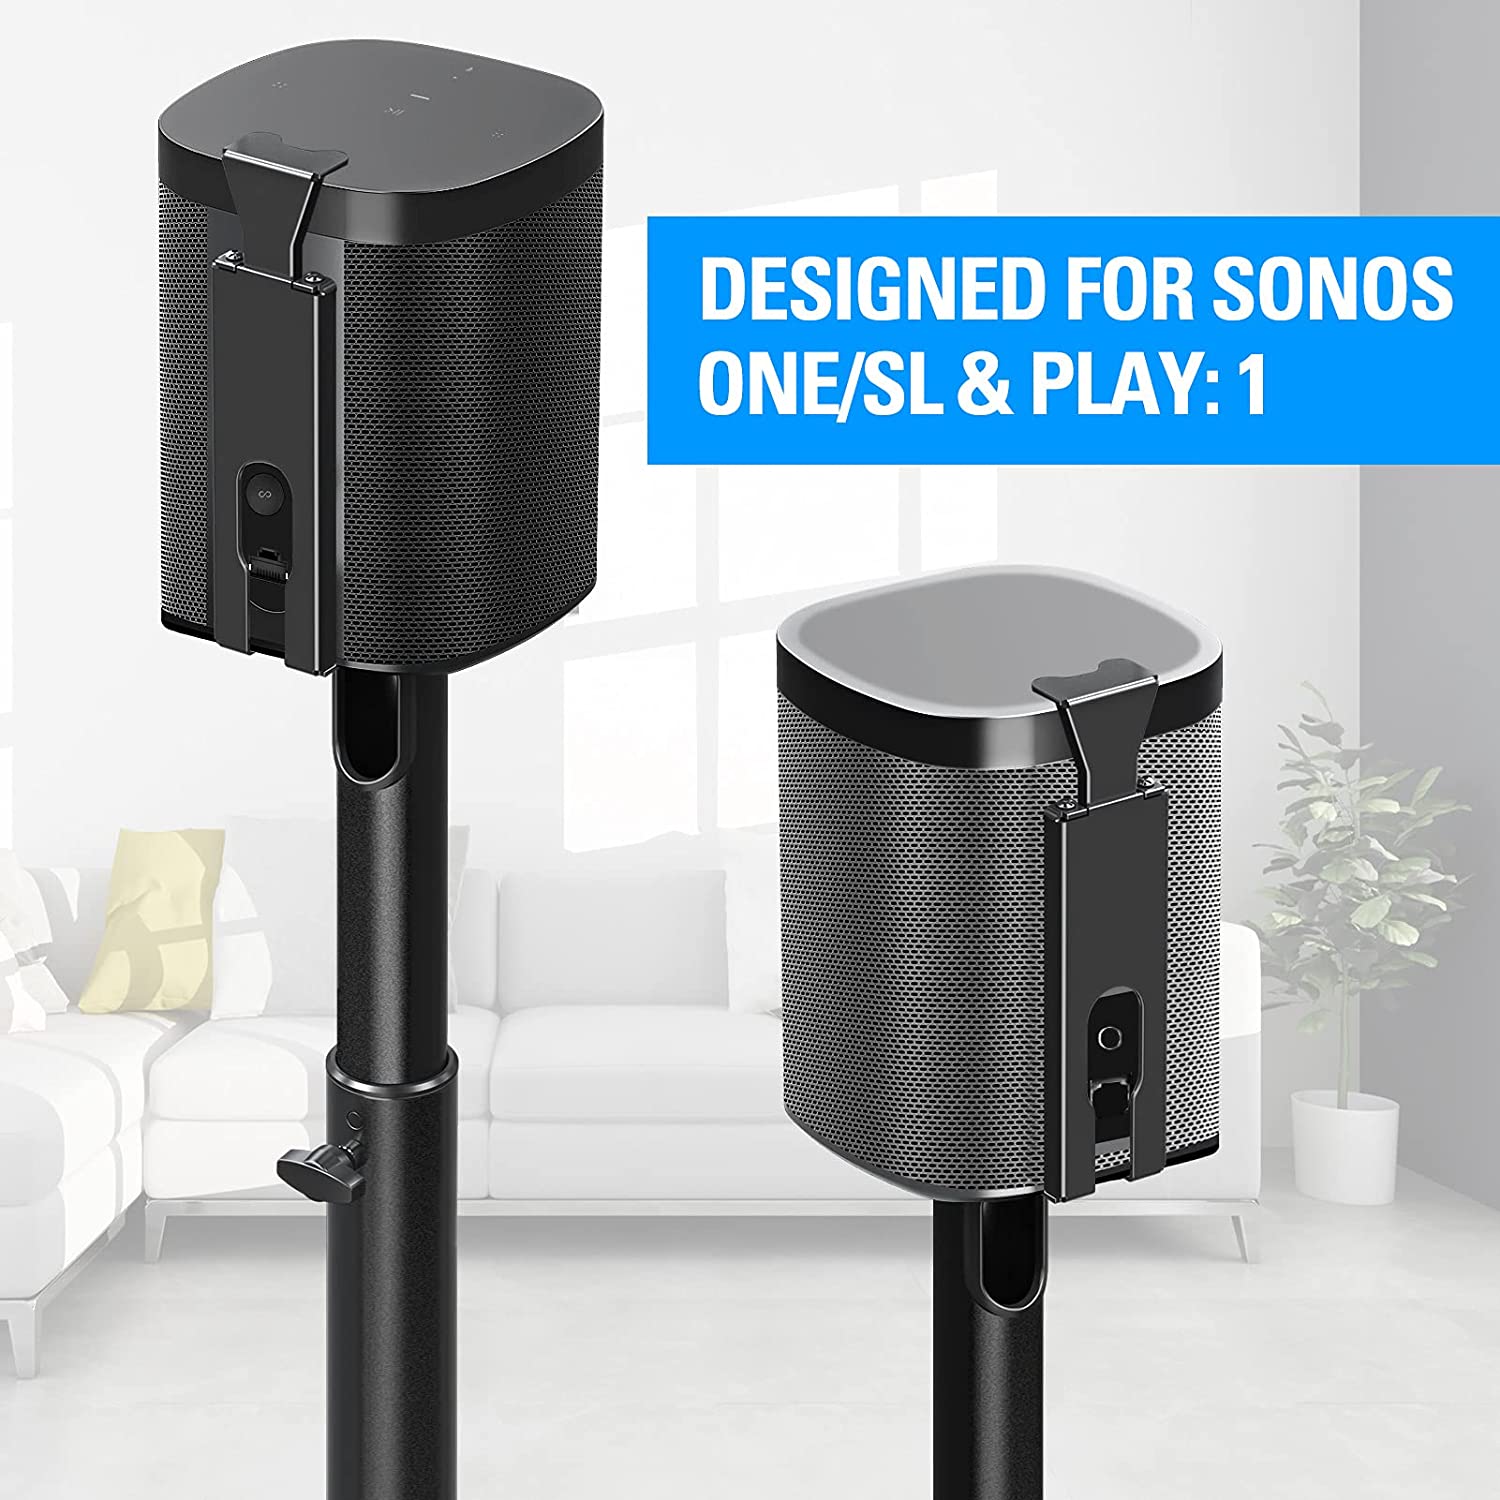 2 Sonos speaker stand